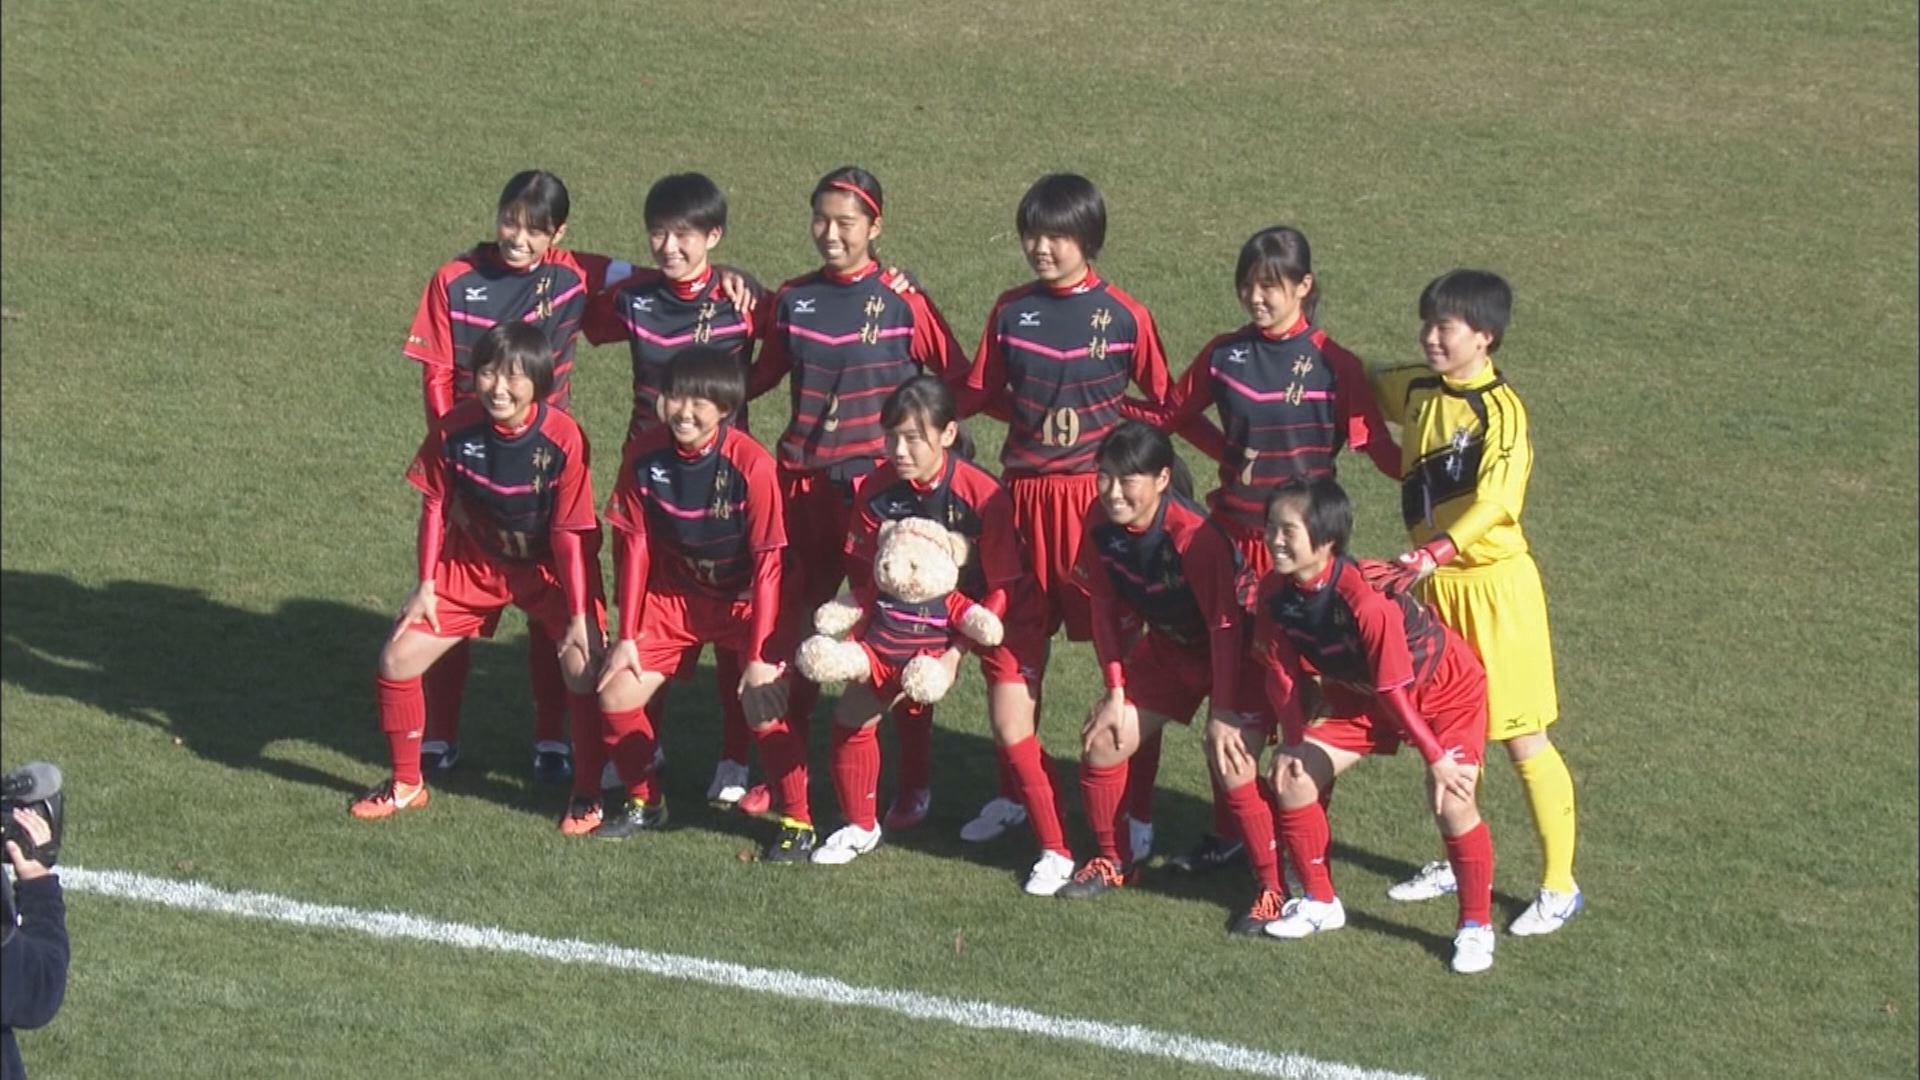 神村学園が３年ぶりの準決勝へ 高校女子サッカー Mbcスポーツニュース